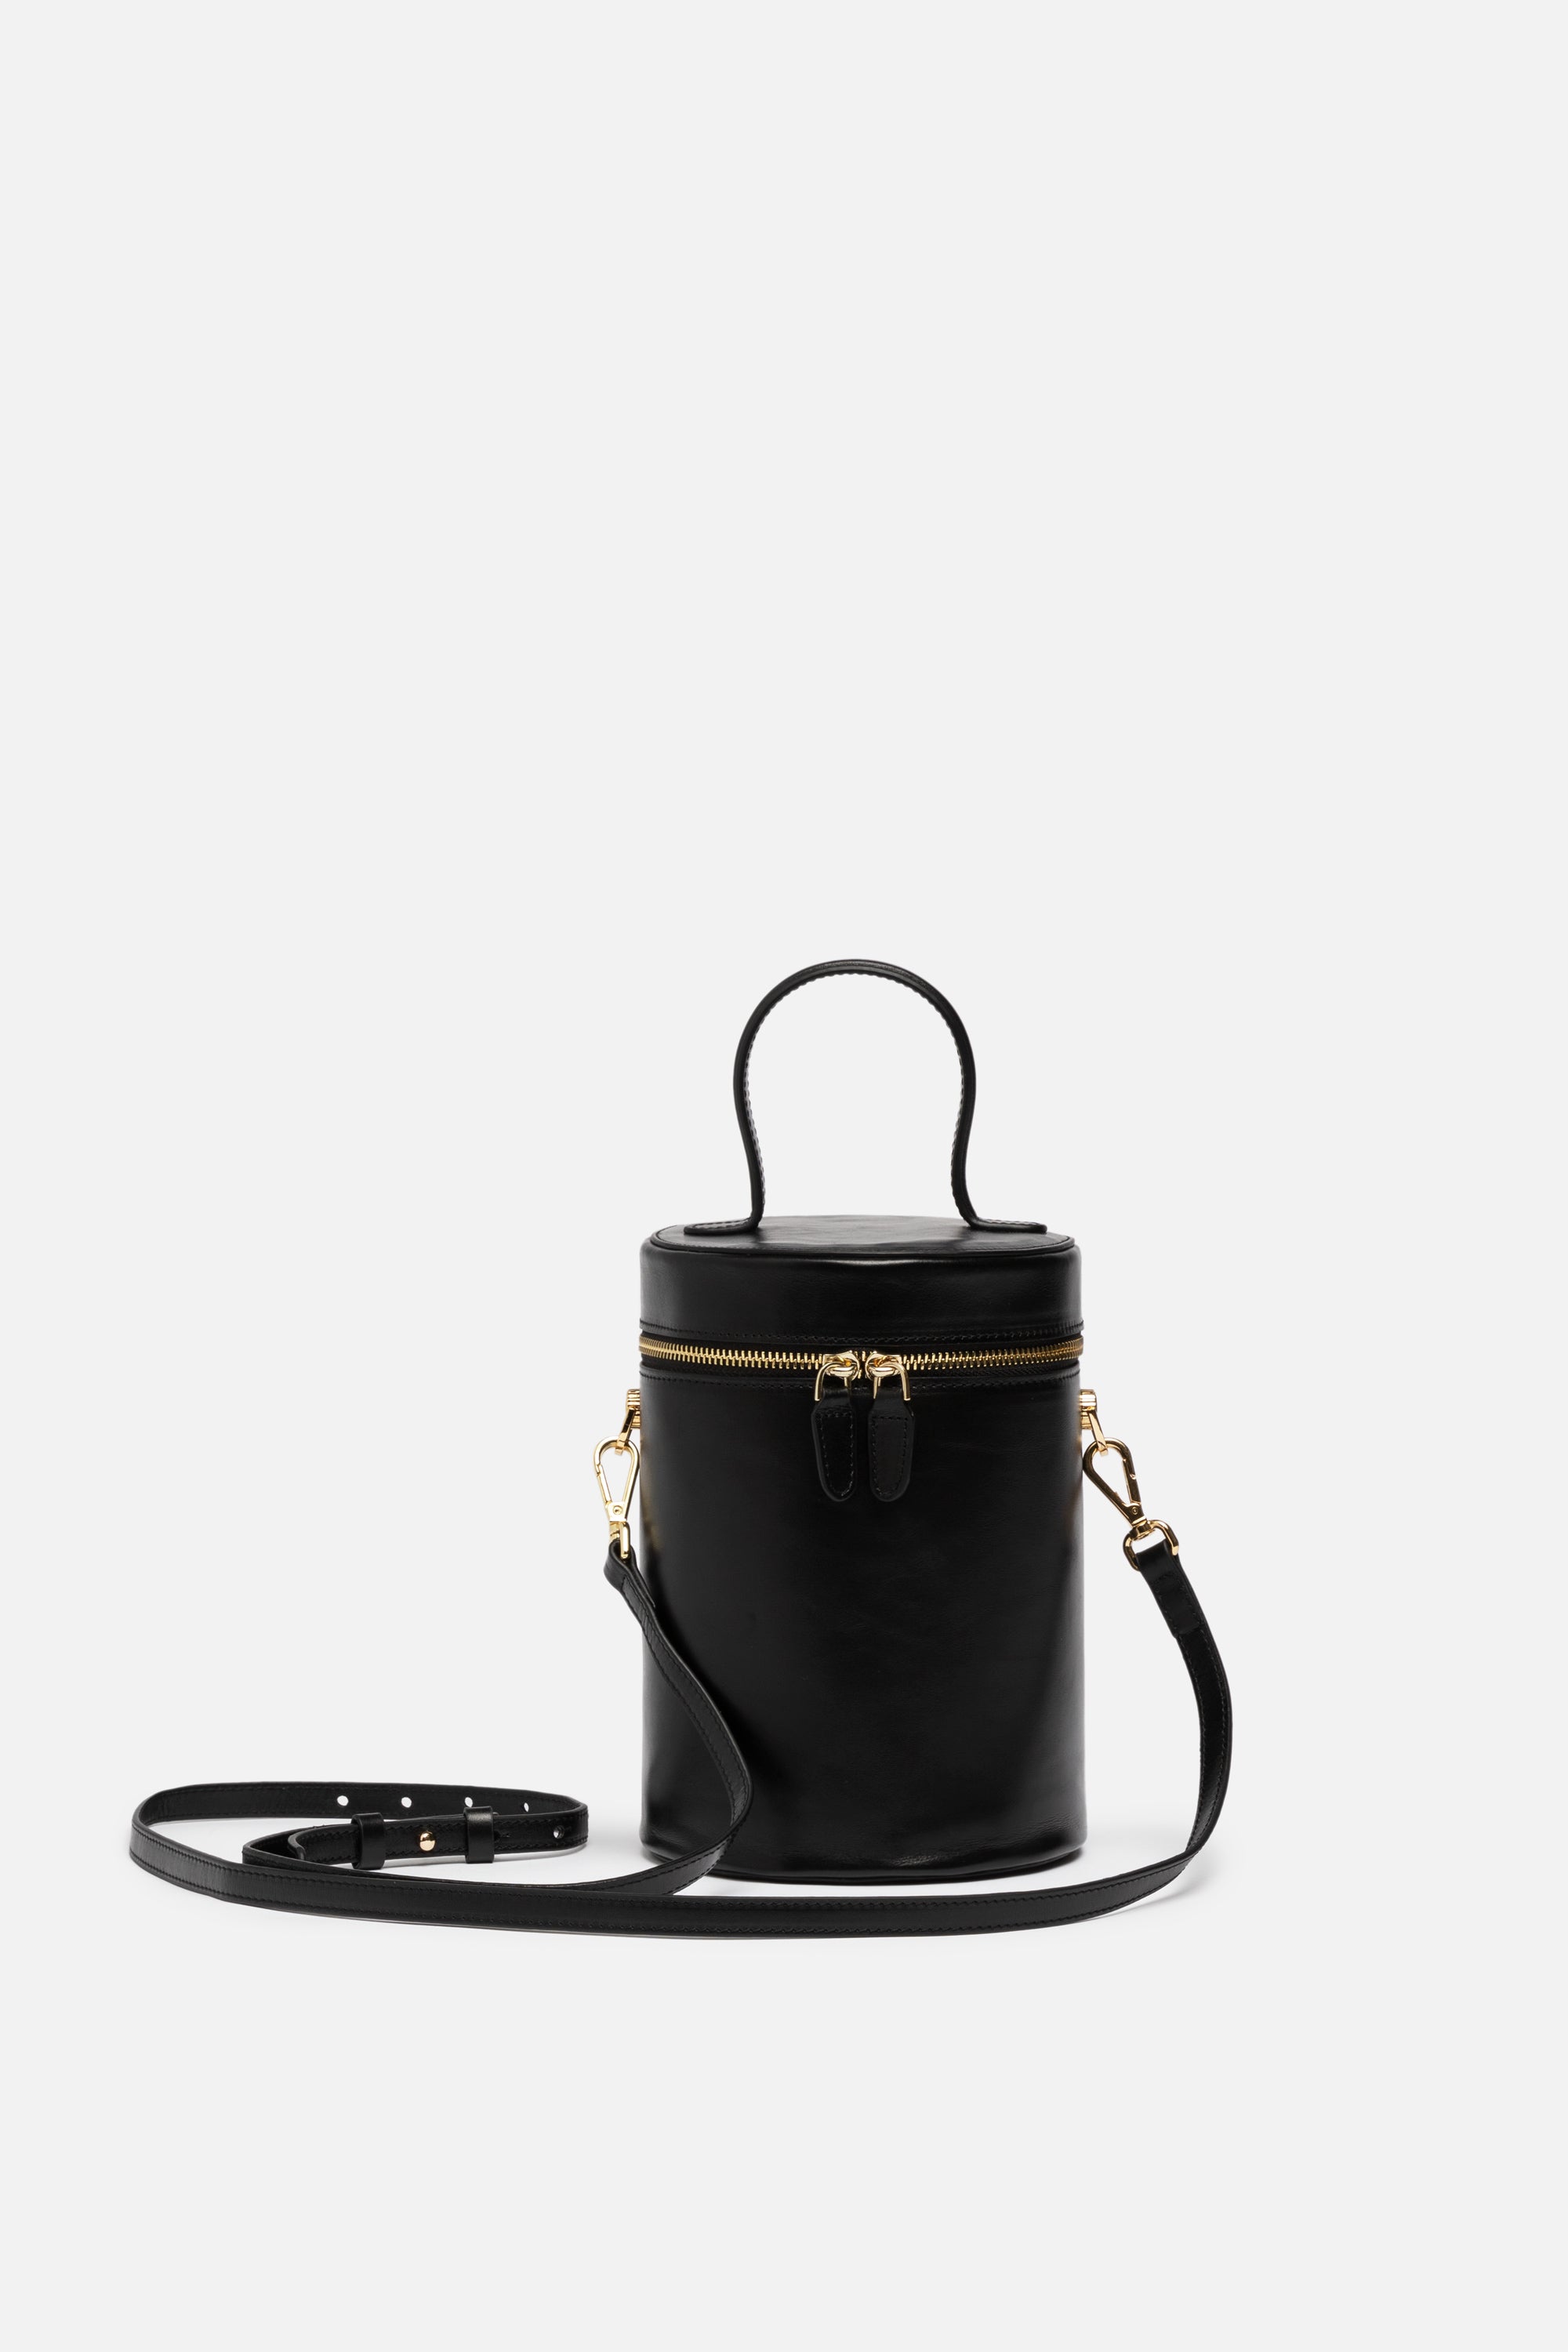 NOLA Bucket Leather Bag in Black | Silver & Riley